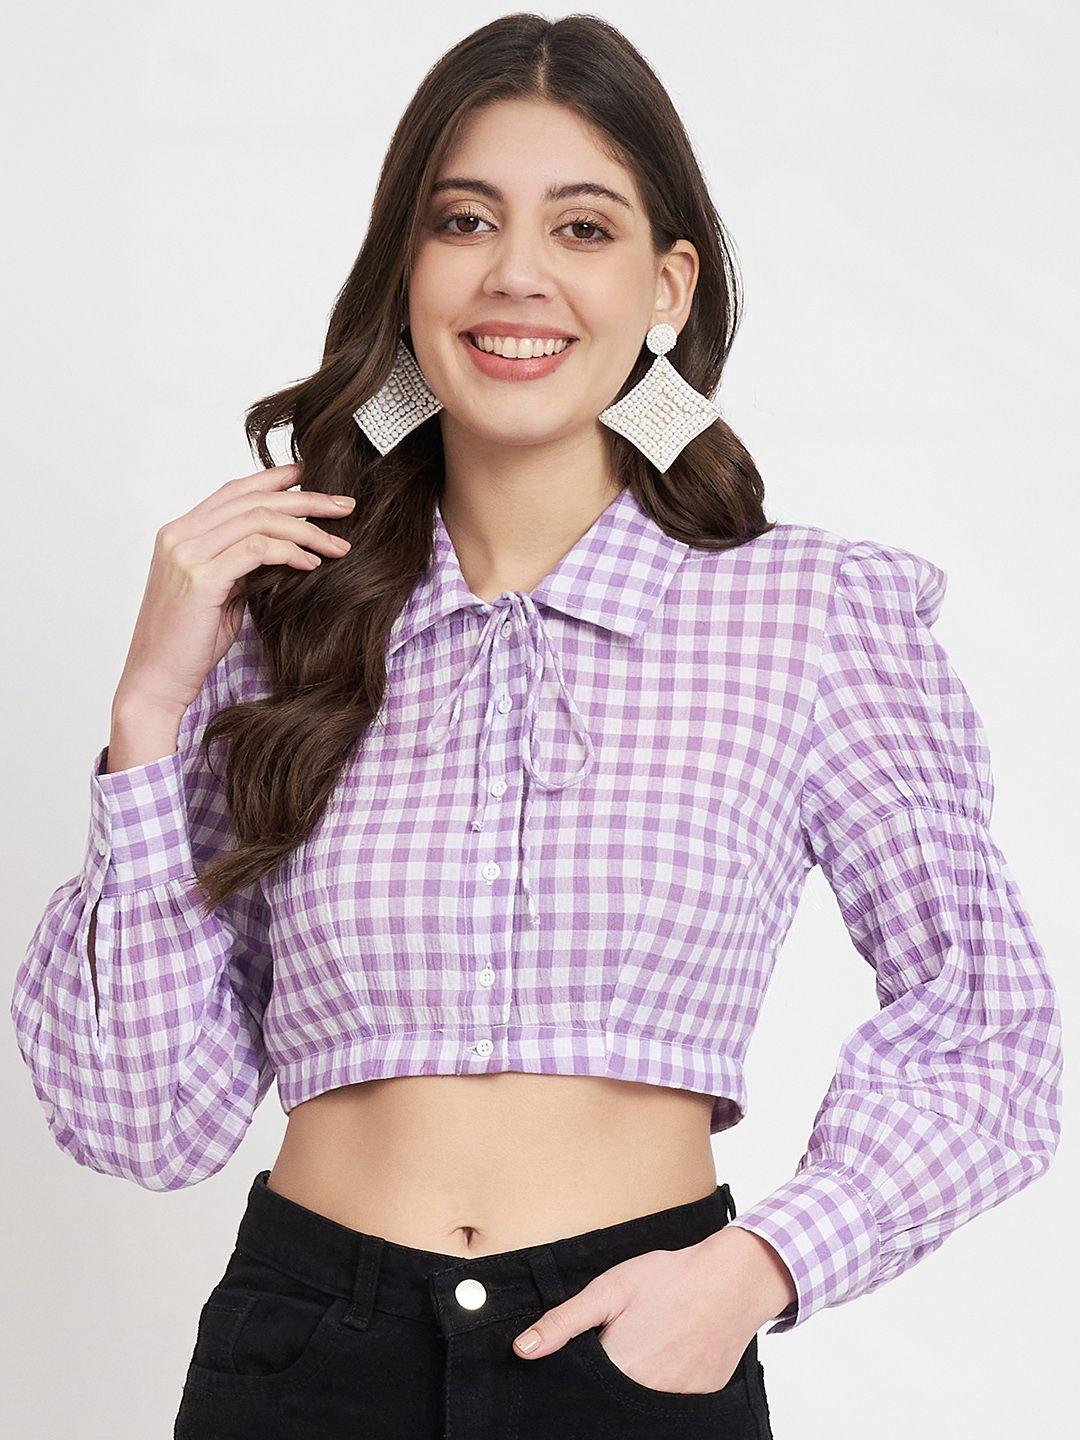 charmgal shirt collar checked cotton shirt style top